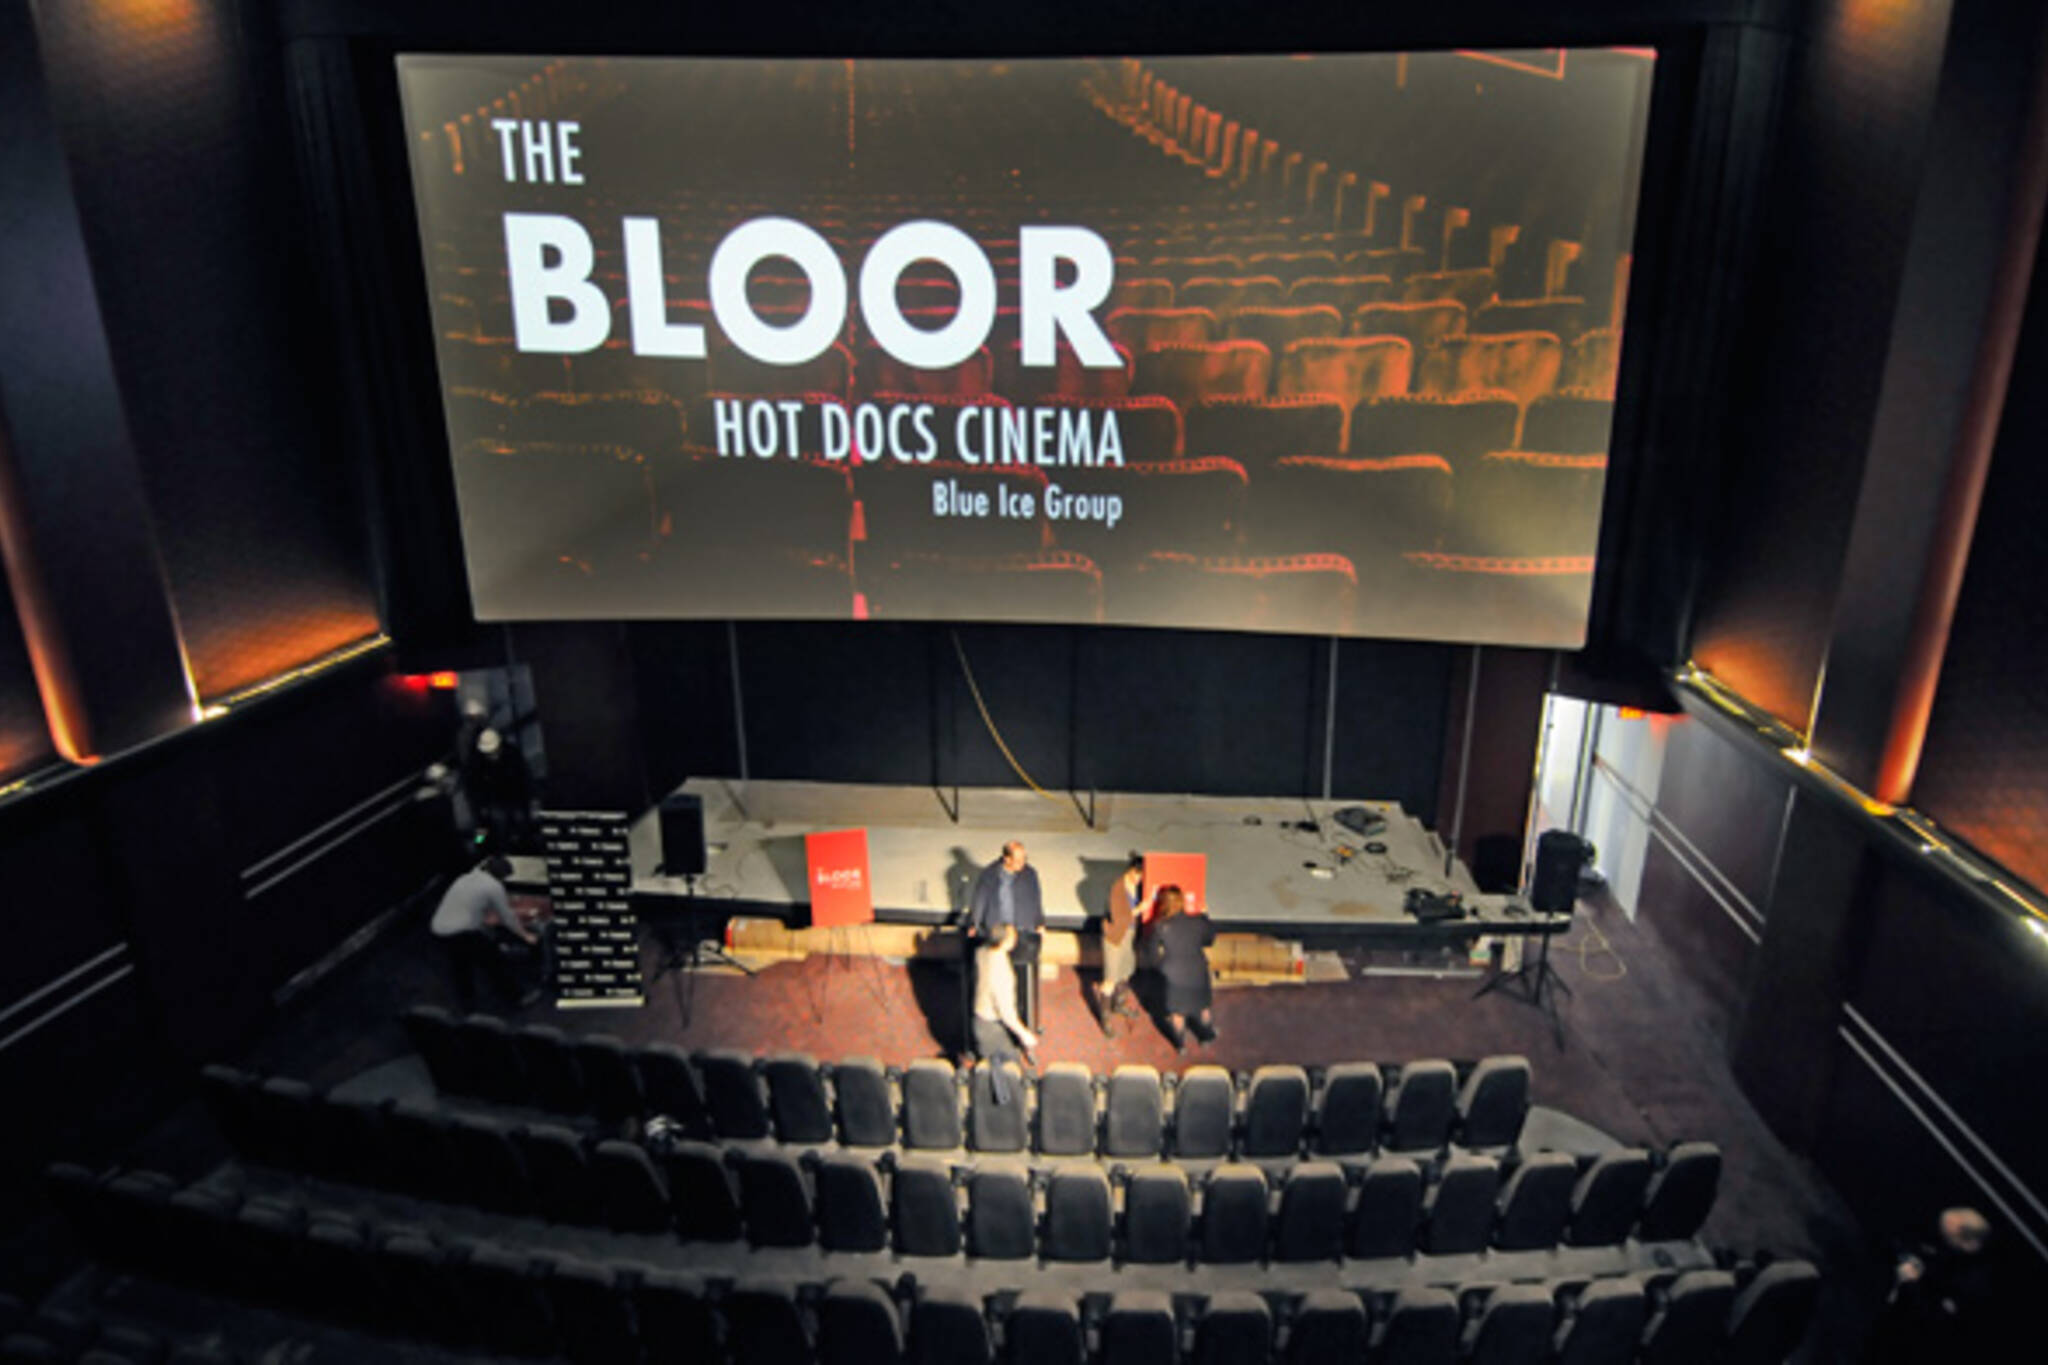 Bloor Hot Docs Cinema